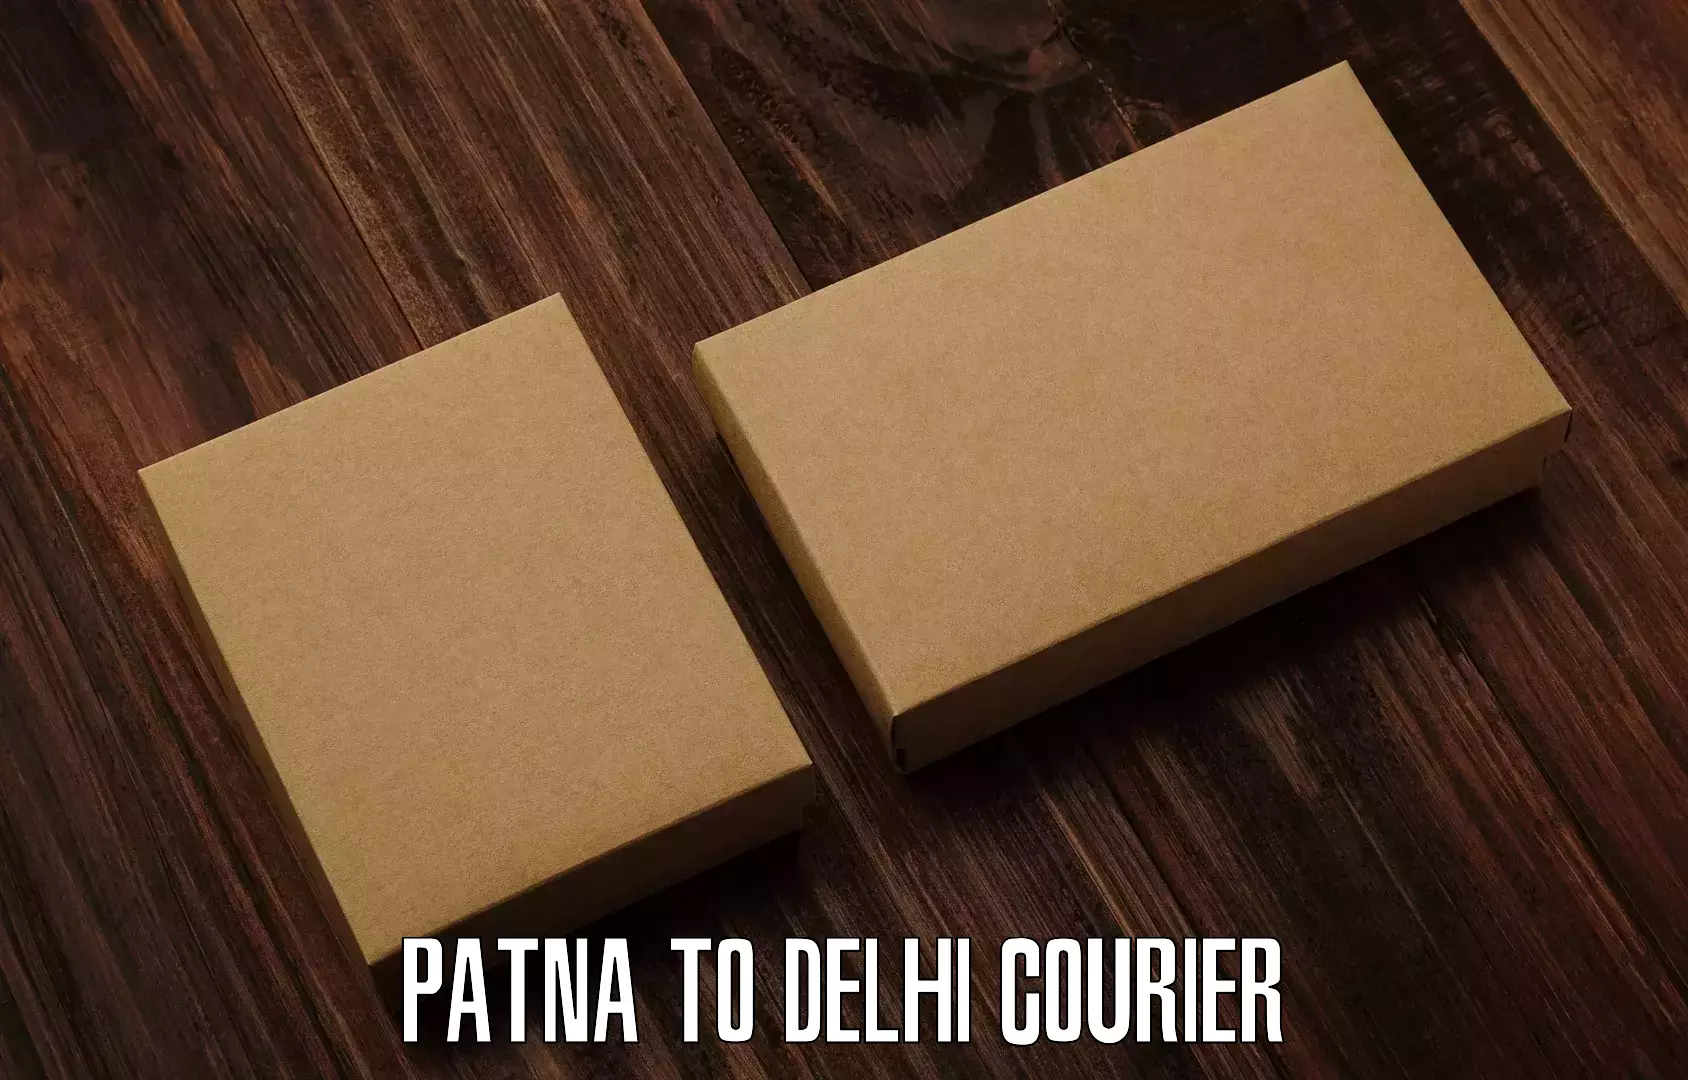 Easy access courier services Patna to Sarojini Nagar